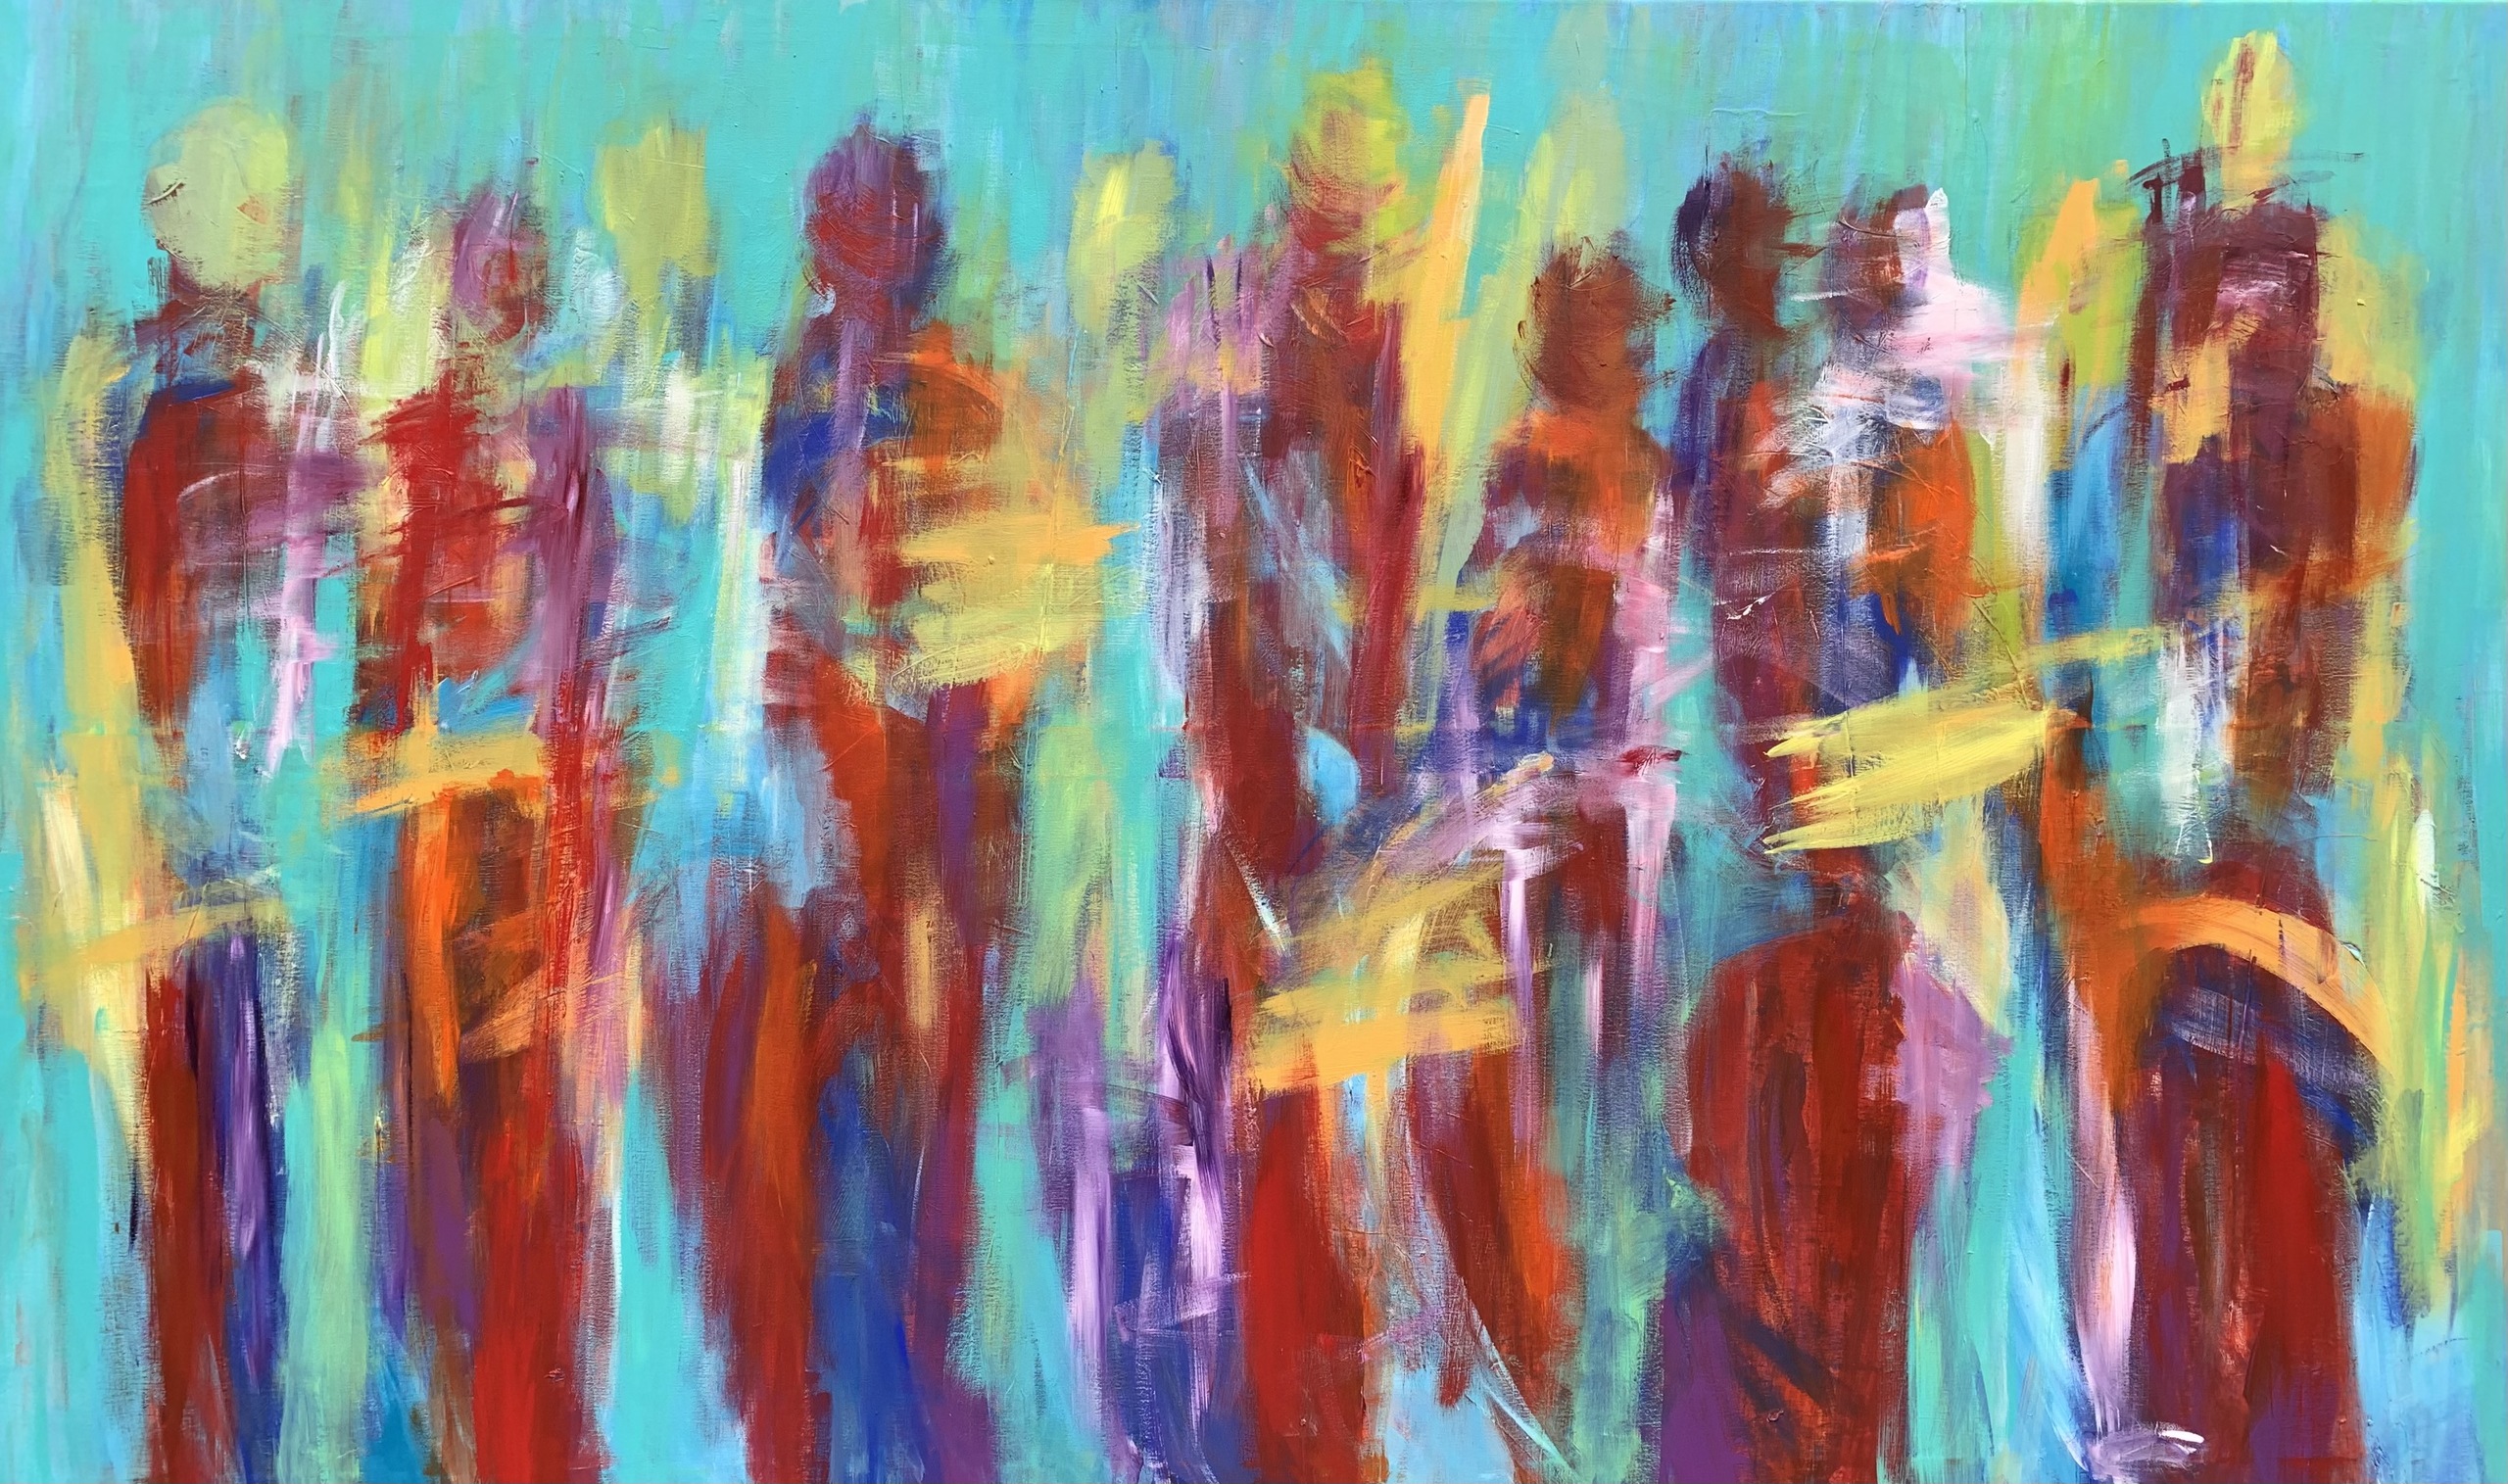 Stort farverigt maleri med mennesker og masser af bevægelse og liv.